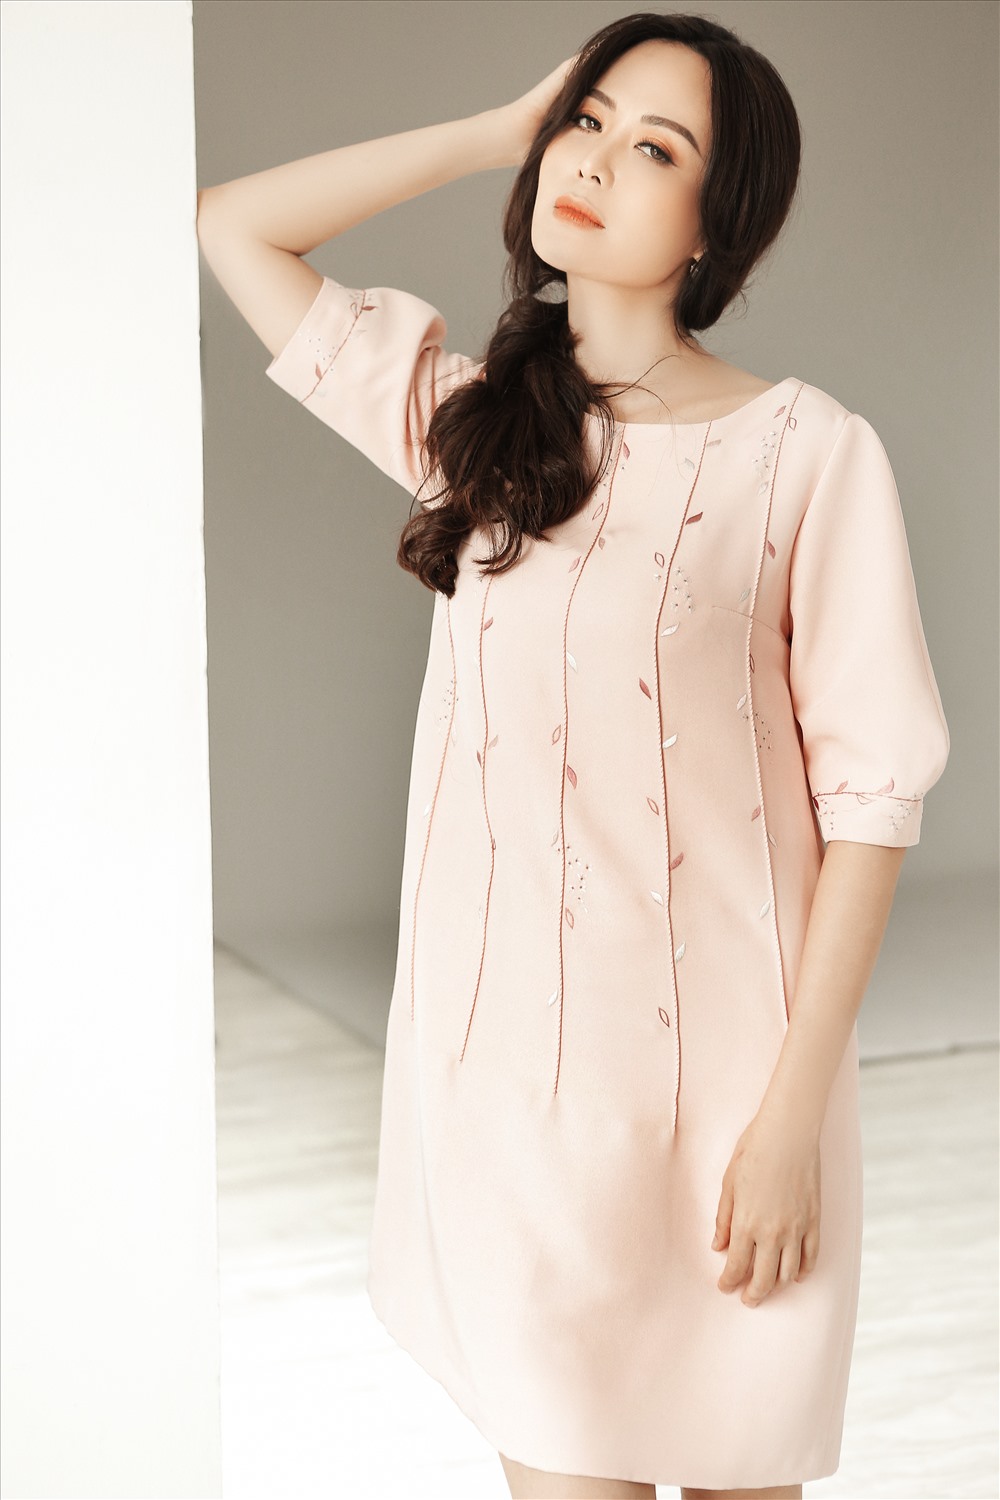 Hoa hậu Thu Thủy khoe vẻ trẻ trung trong mẫu váy của nhà thiết kế Xuân Lê. Ảnh: Kim Bánh Trôi Nước. 